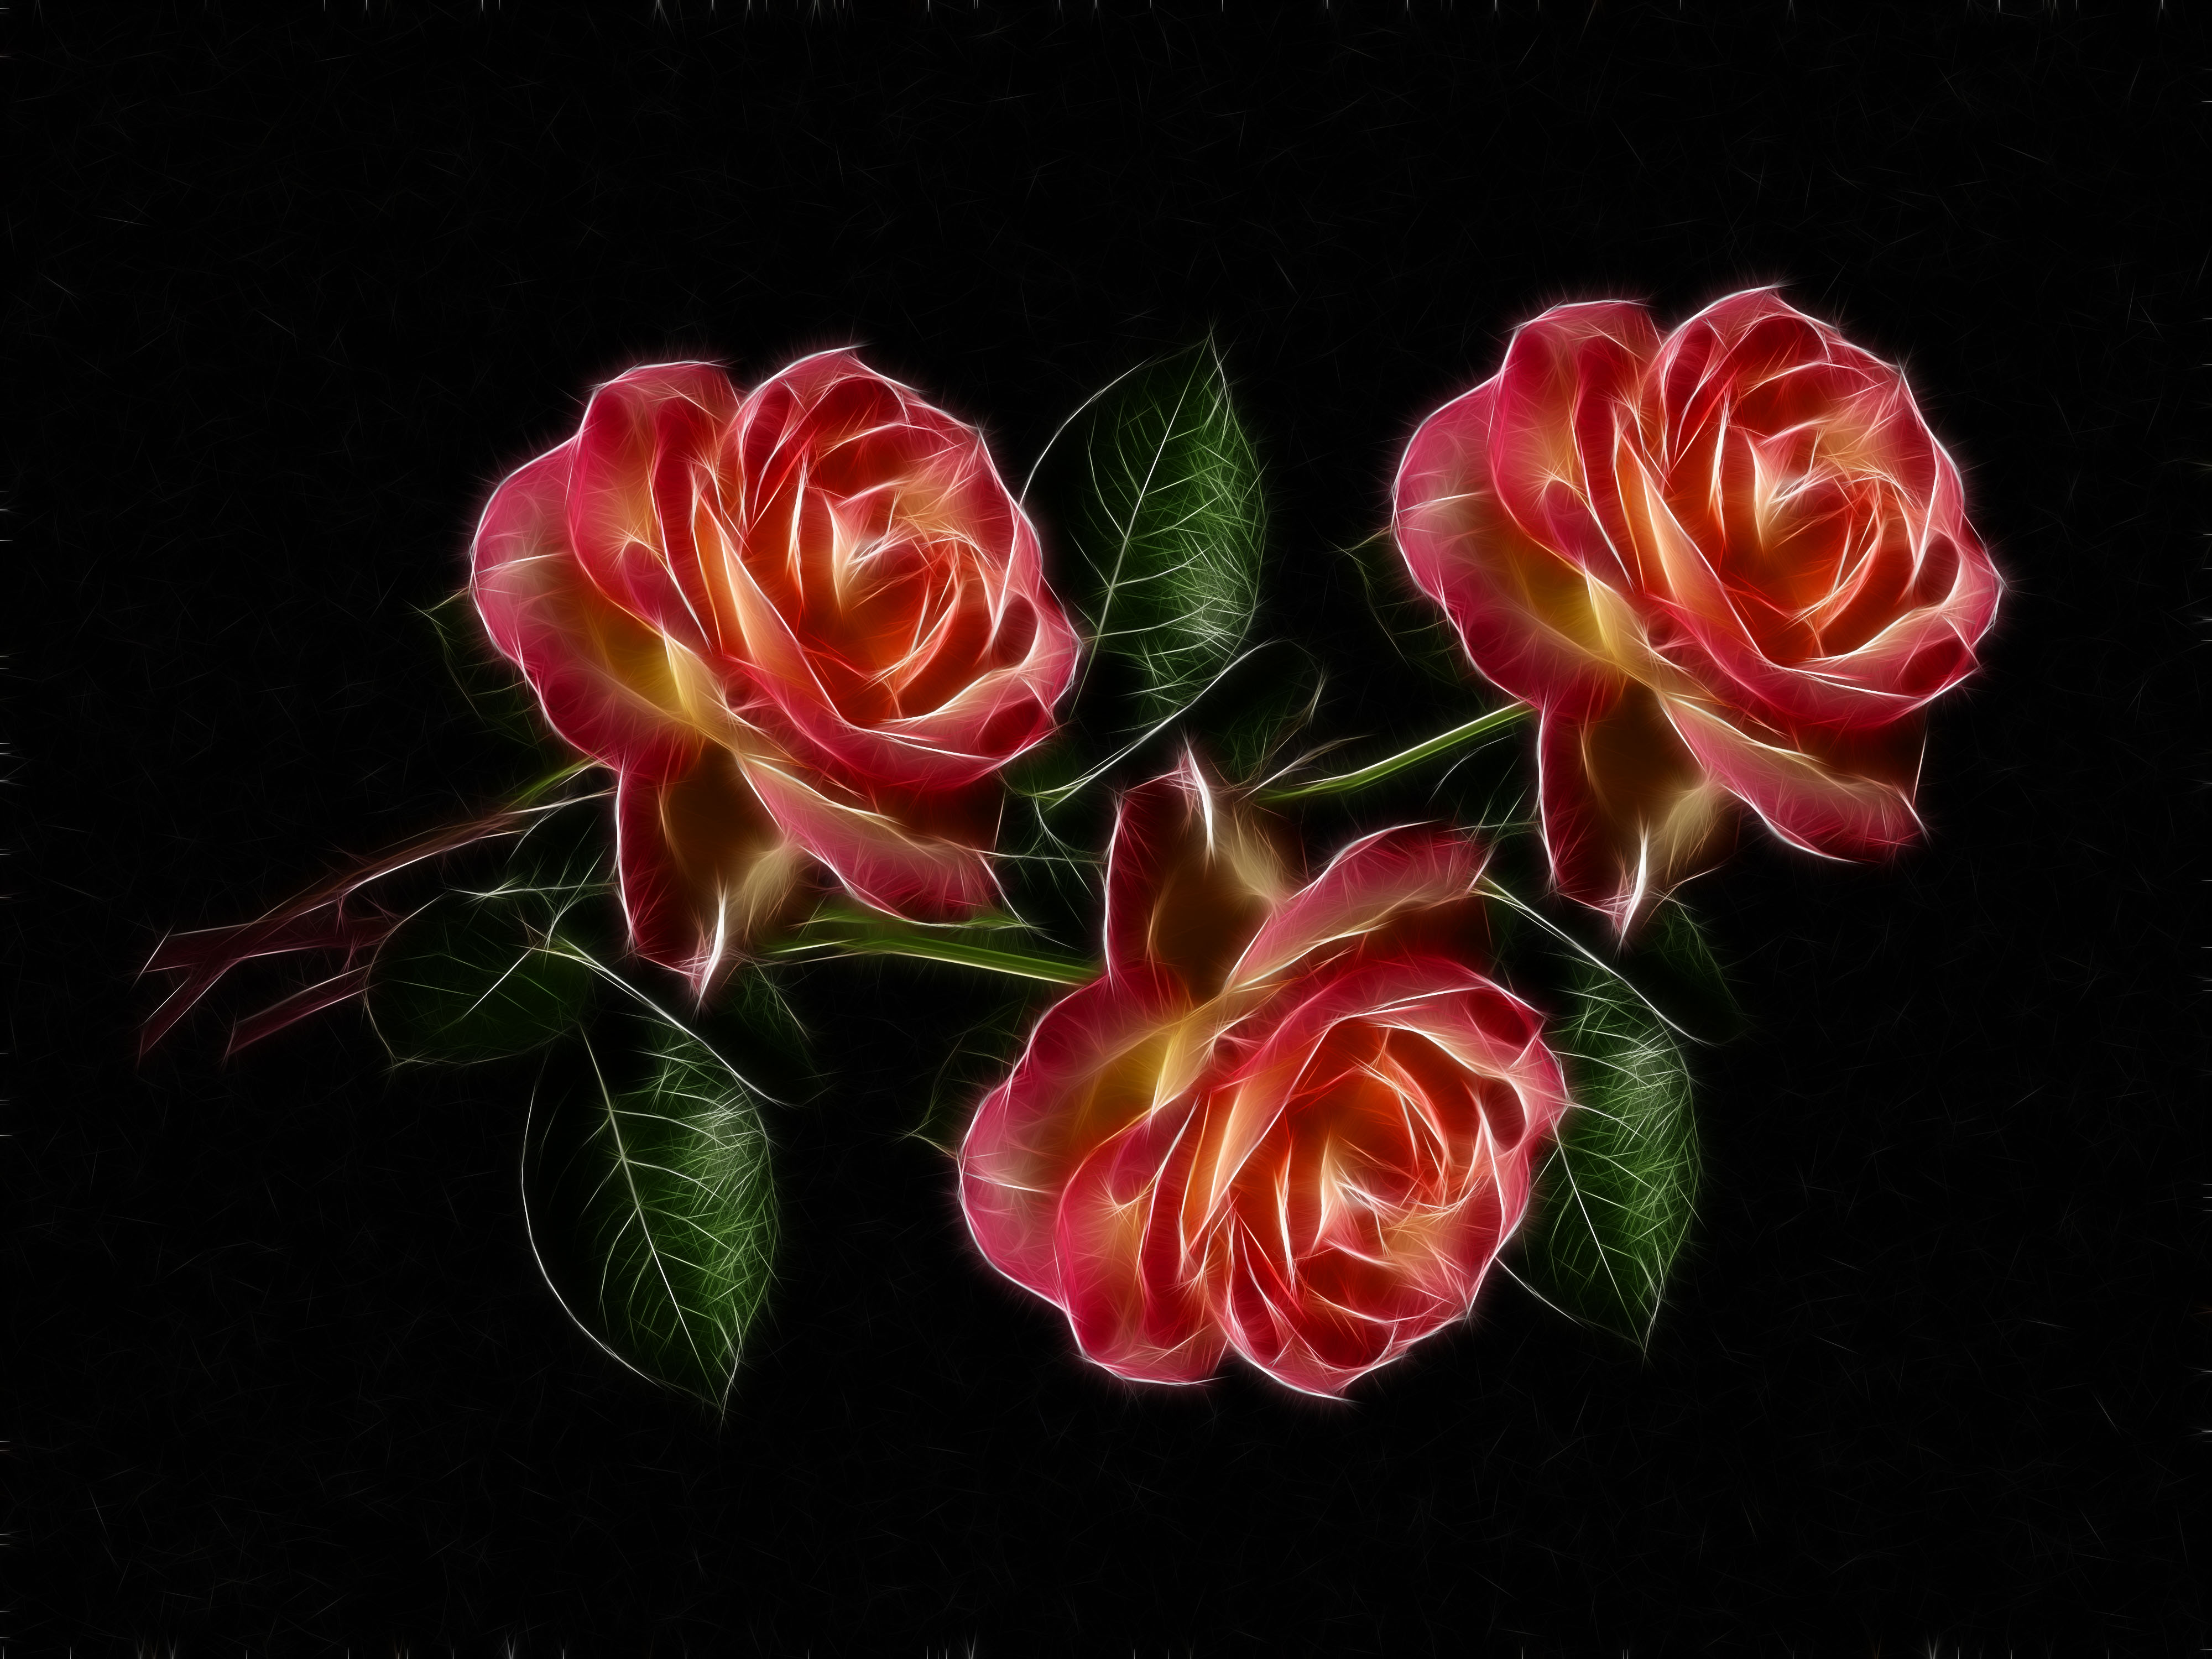 Roses by Susanlu4esm